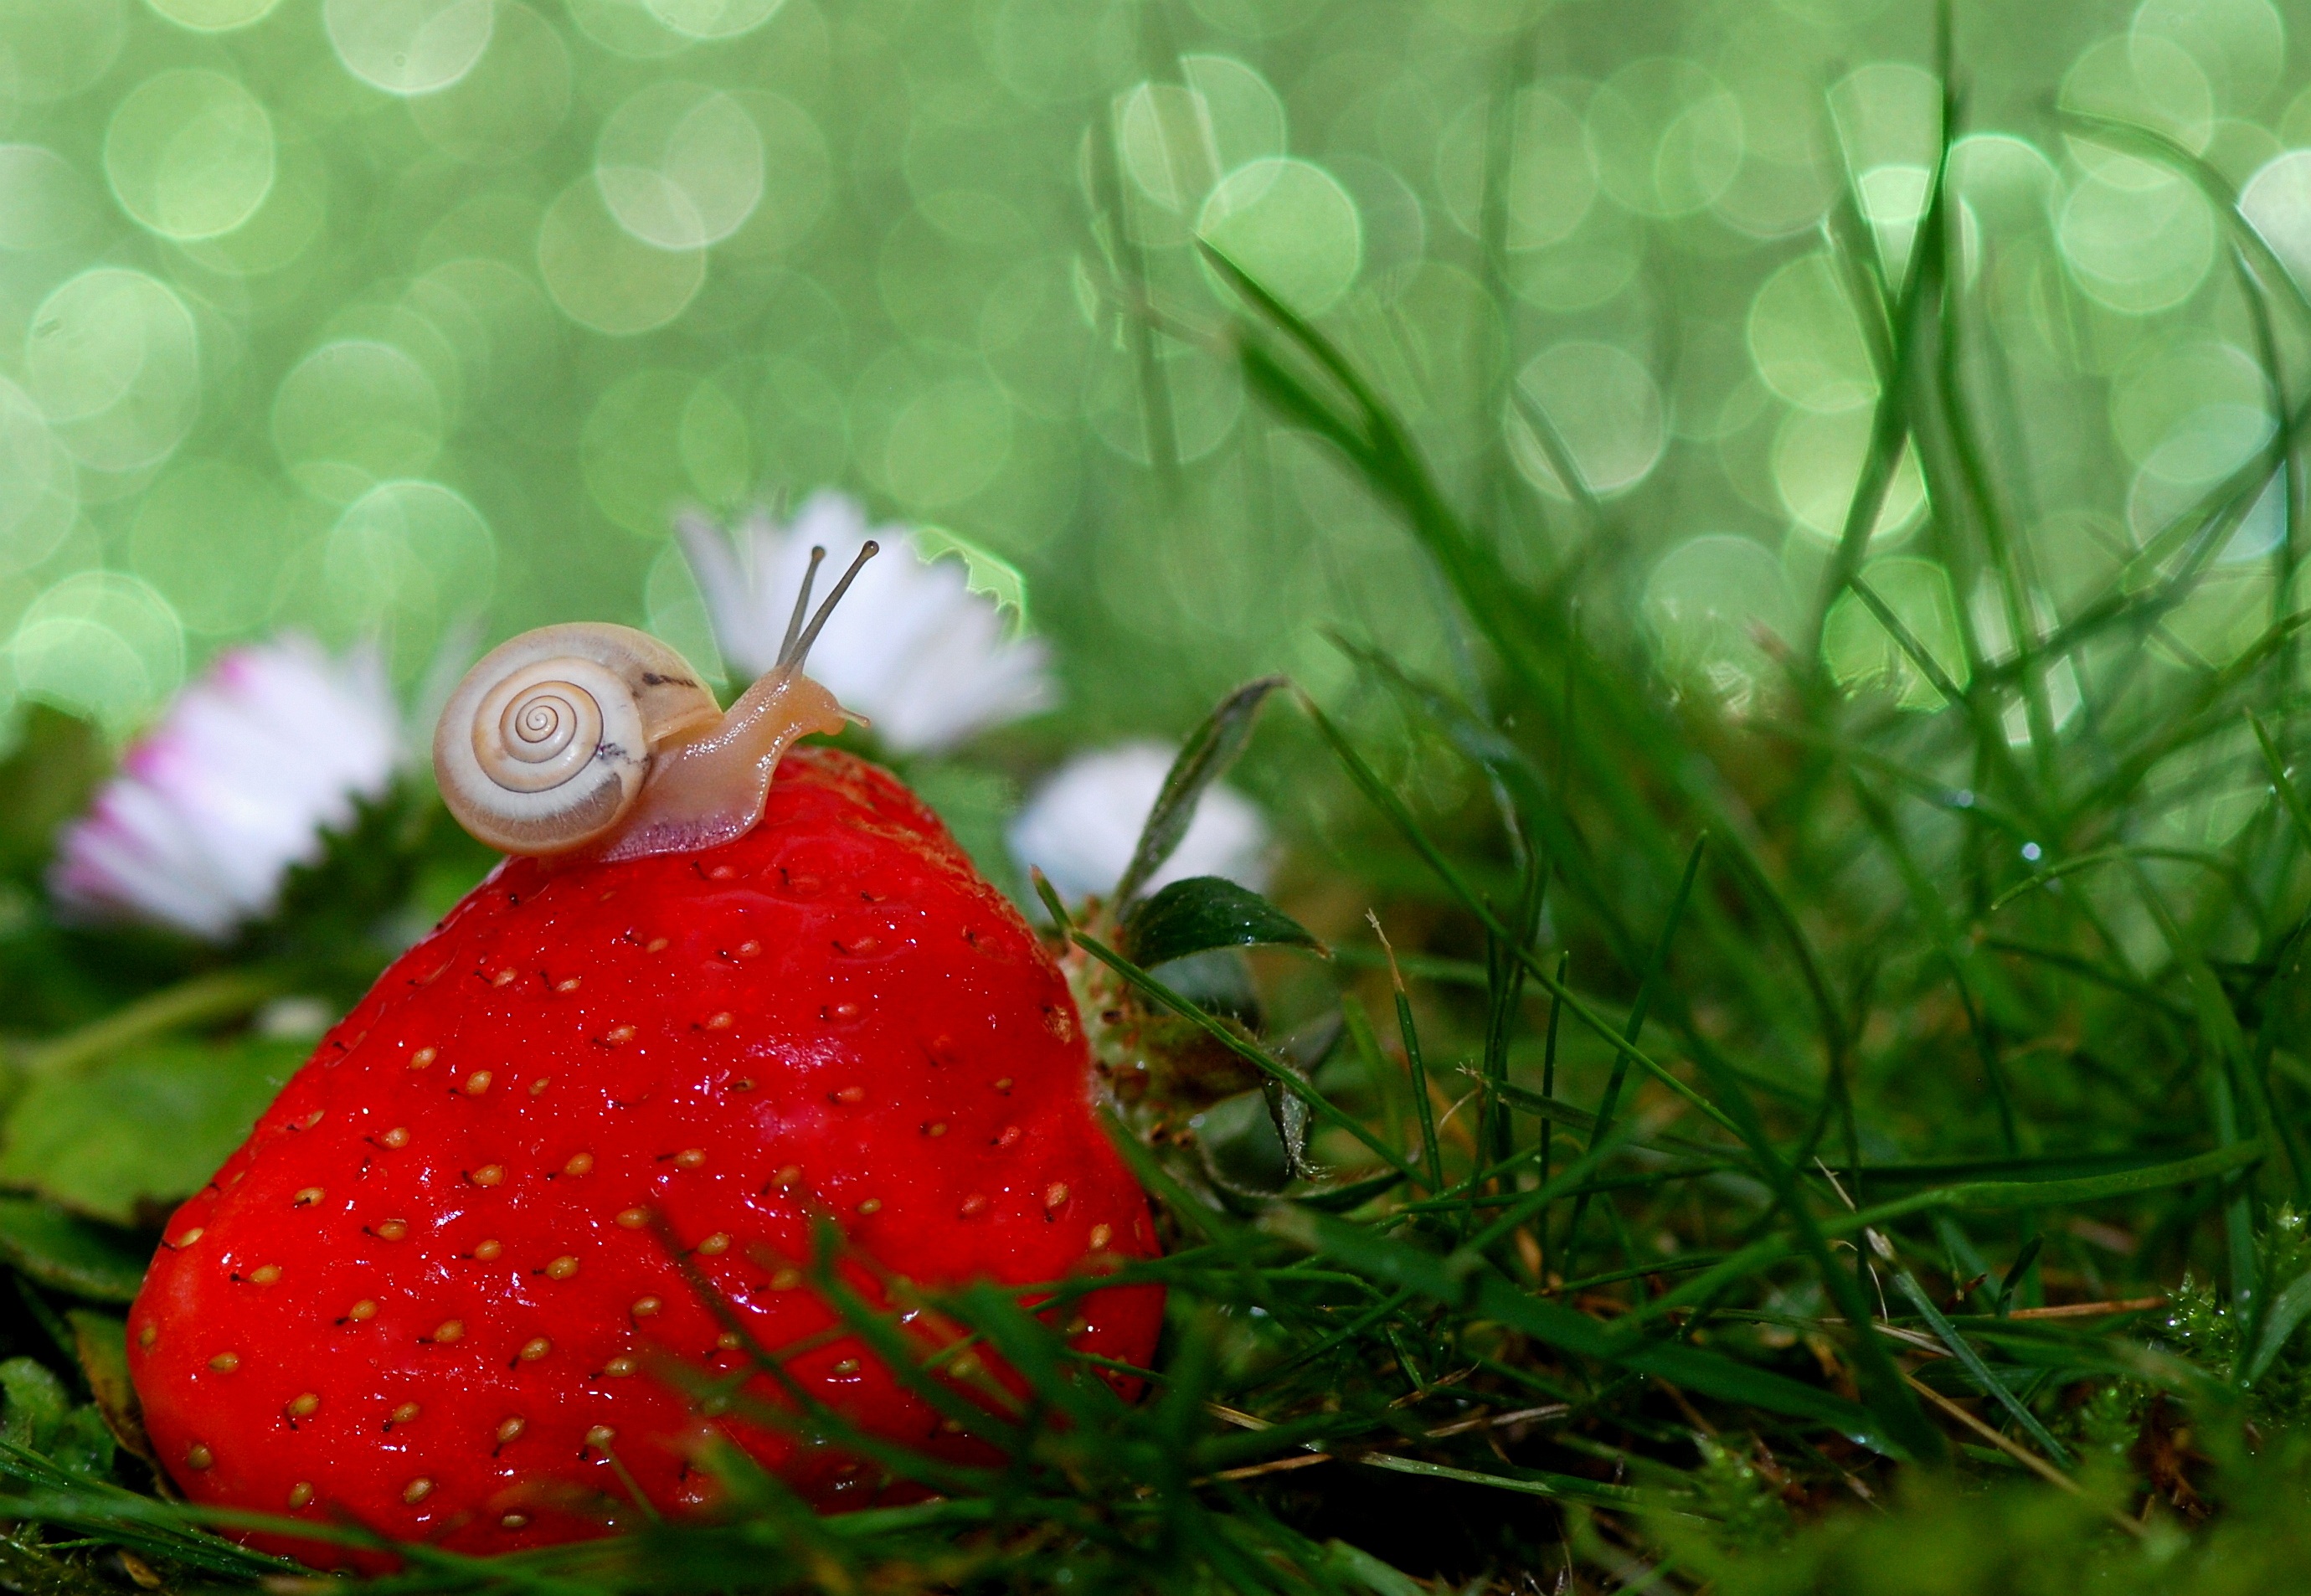 一只小蜗牛在新鲜草莓上爬行